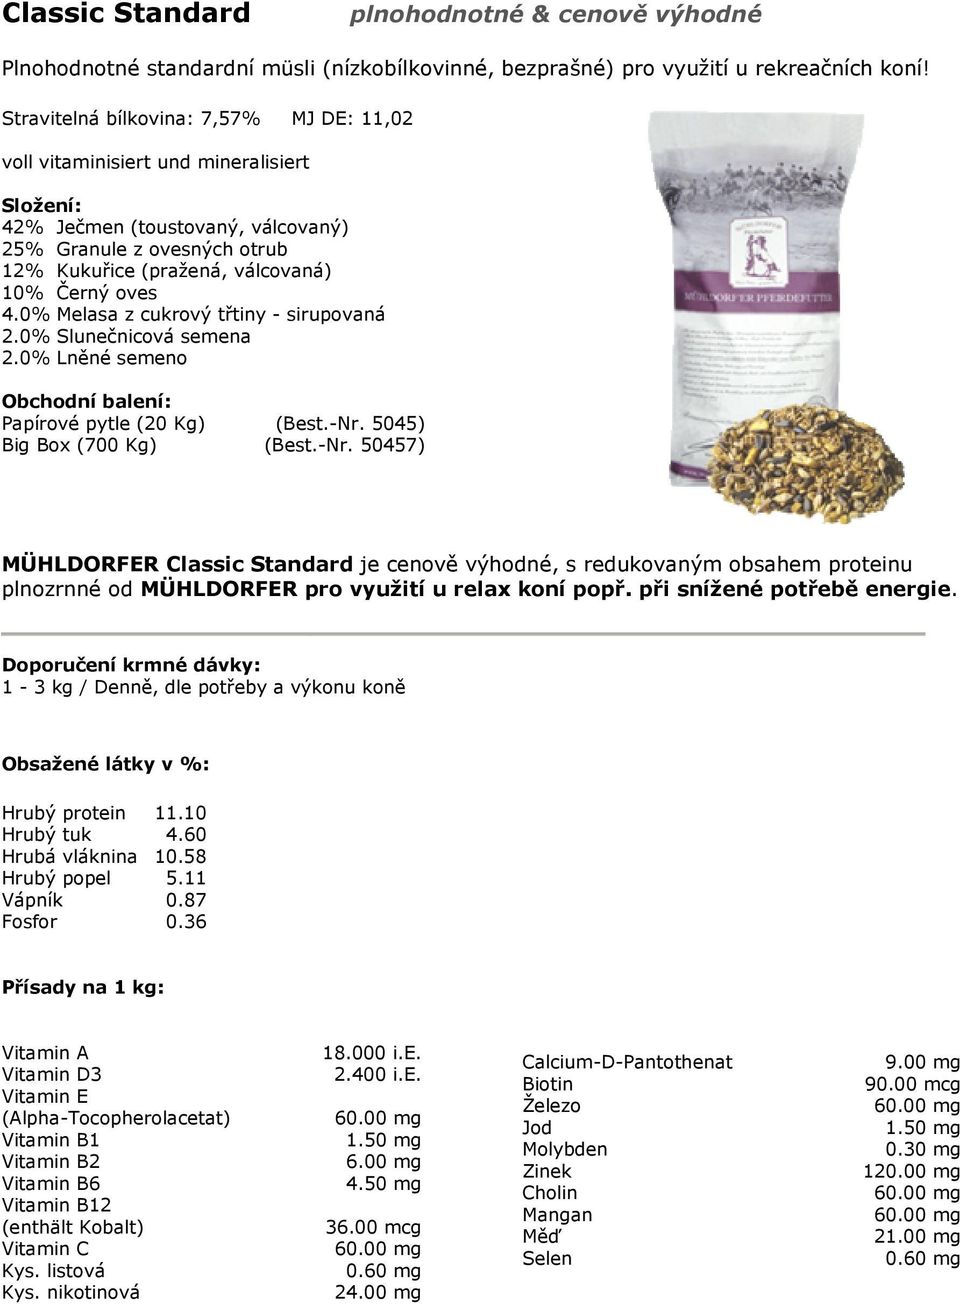 0% Melasa z cukrový třtiny - sirupovaná 2.0% Slunečnicová semena 2.0% Lněné semeno Papírové pytle (20 Kg) (Best.-Nr.